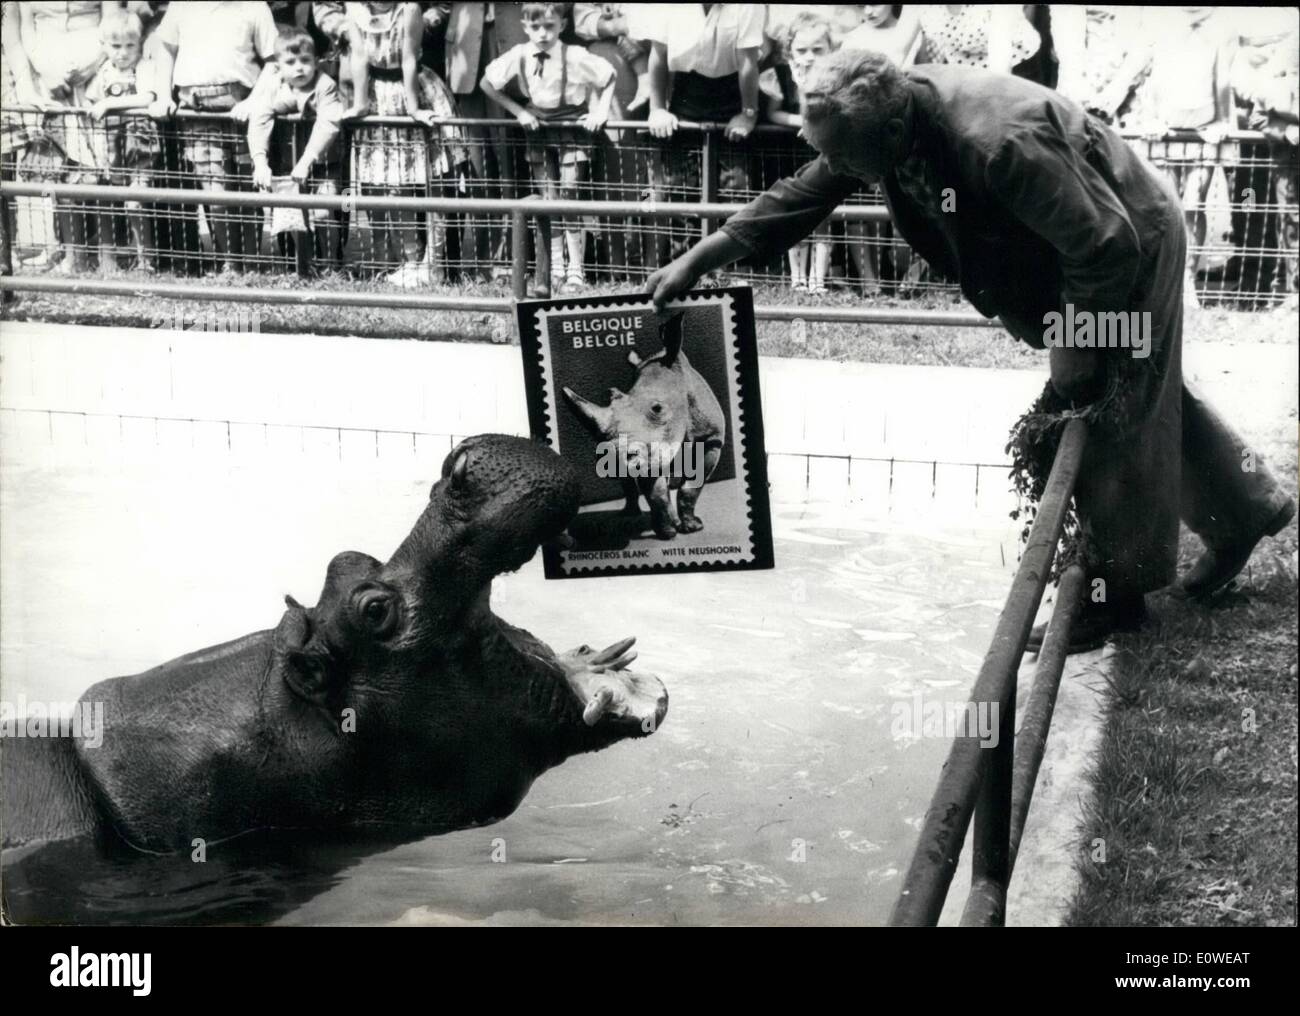 Lug. 07, 1962 - hippo di Francoforte,germania,zoo scatta per come oversized con timbro di stampa che mostra un rinoceronte bianco mostrato da operaio ECK . Si tratta di un display poster di una collezione di francobolli internazionali con sottoprodotti di origine animale le foto ora illustrato a Francoforte. Foto Stock